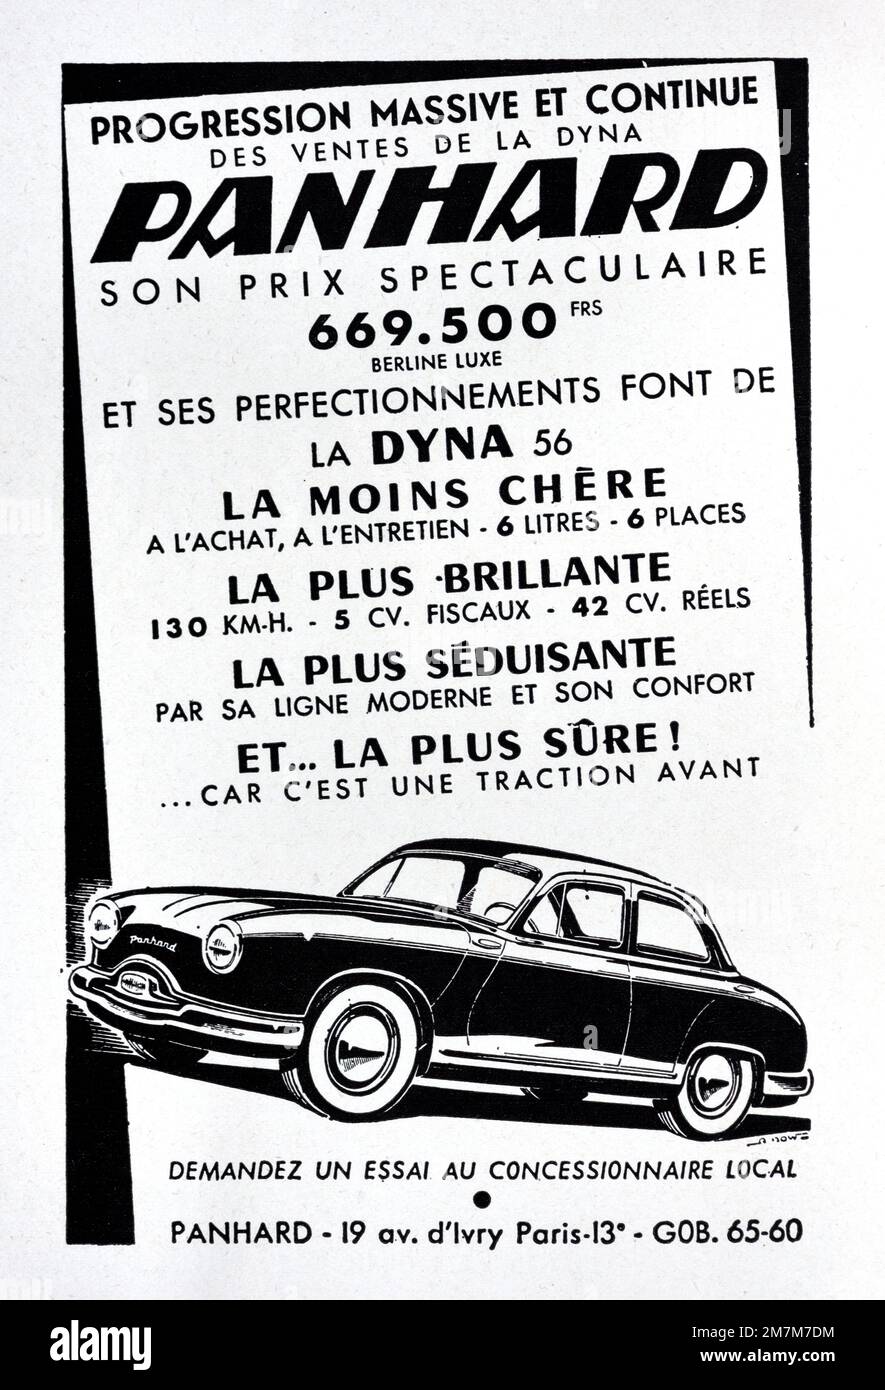 Vintage o antiguo anuncio, anuncio, publicidad o ilustración para Panhard Dyna 56 coche o automóvil 1956 Foto de stock